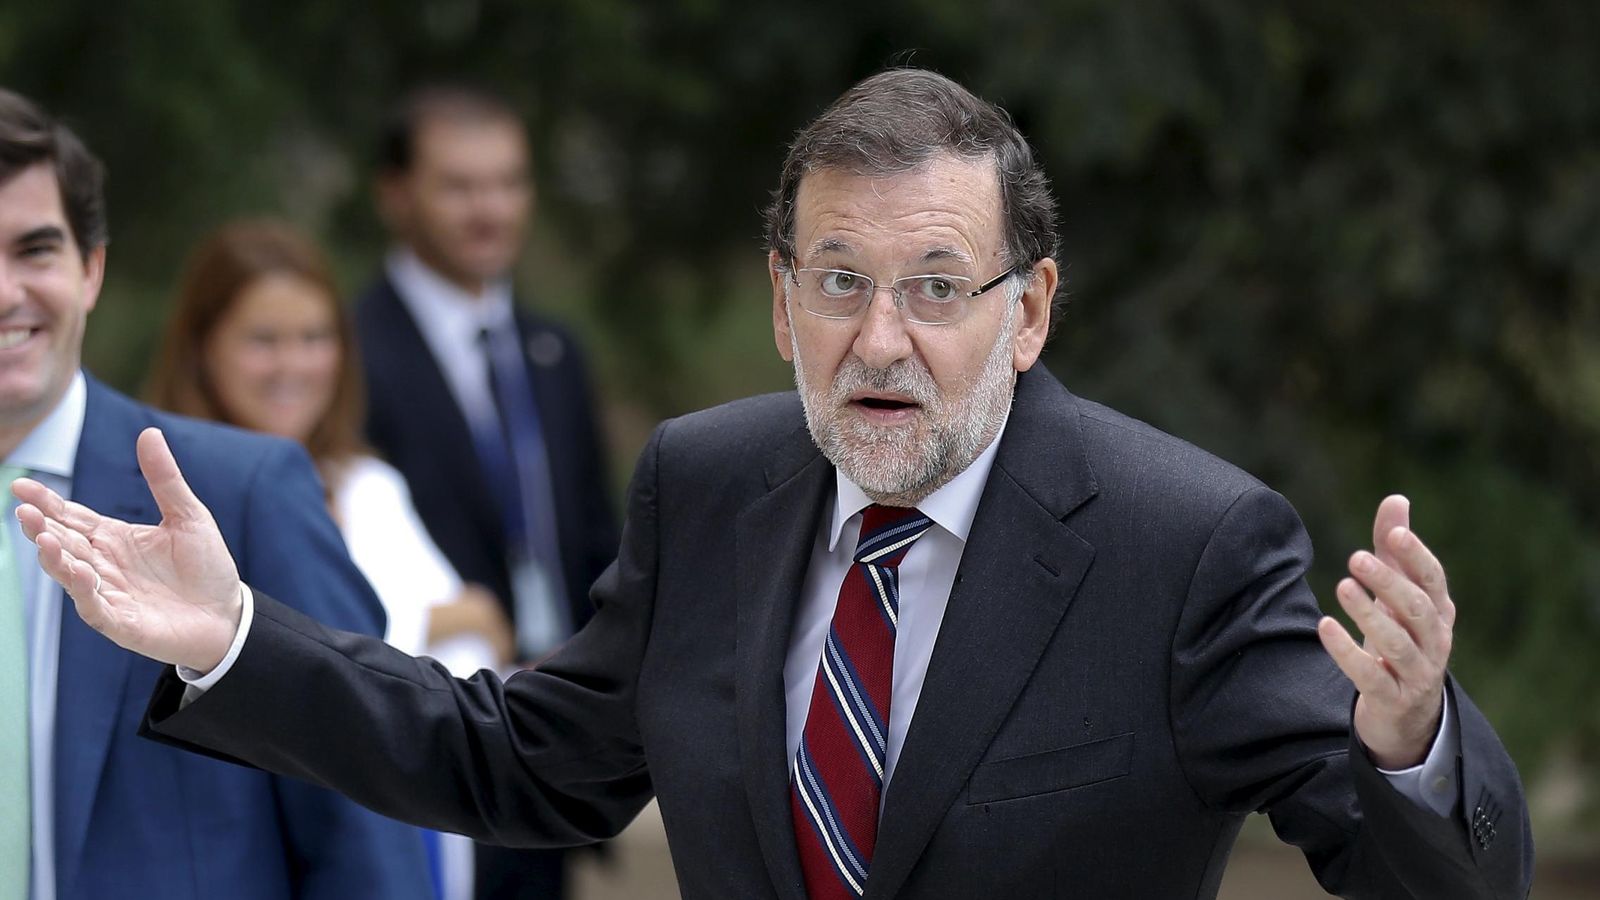 Foto: Mariano Rajoy durante una recepción en la Moncloa. (REUTERS/Andrea Comas)